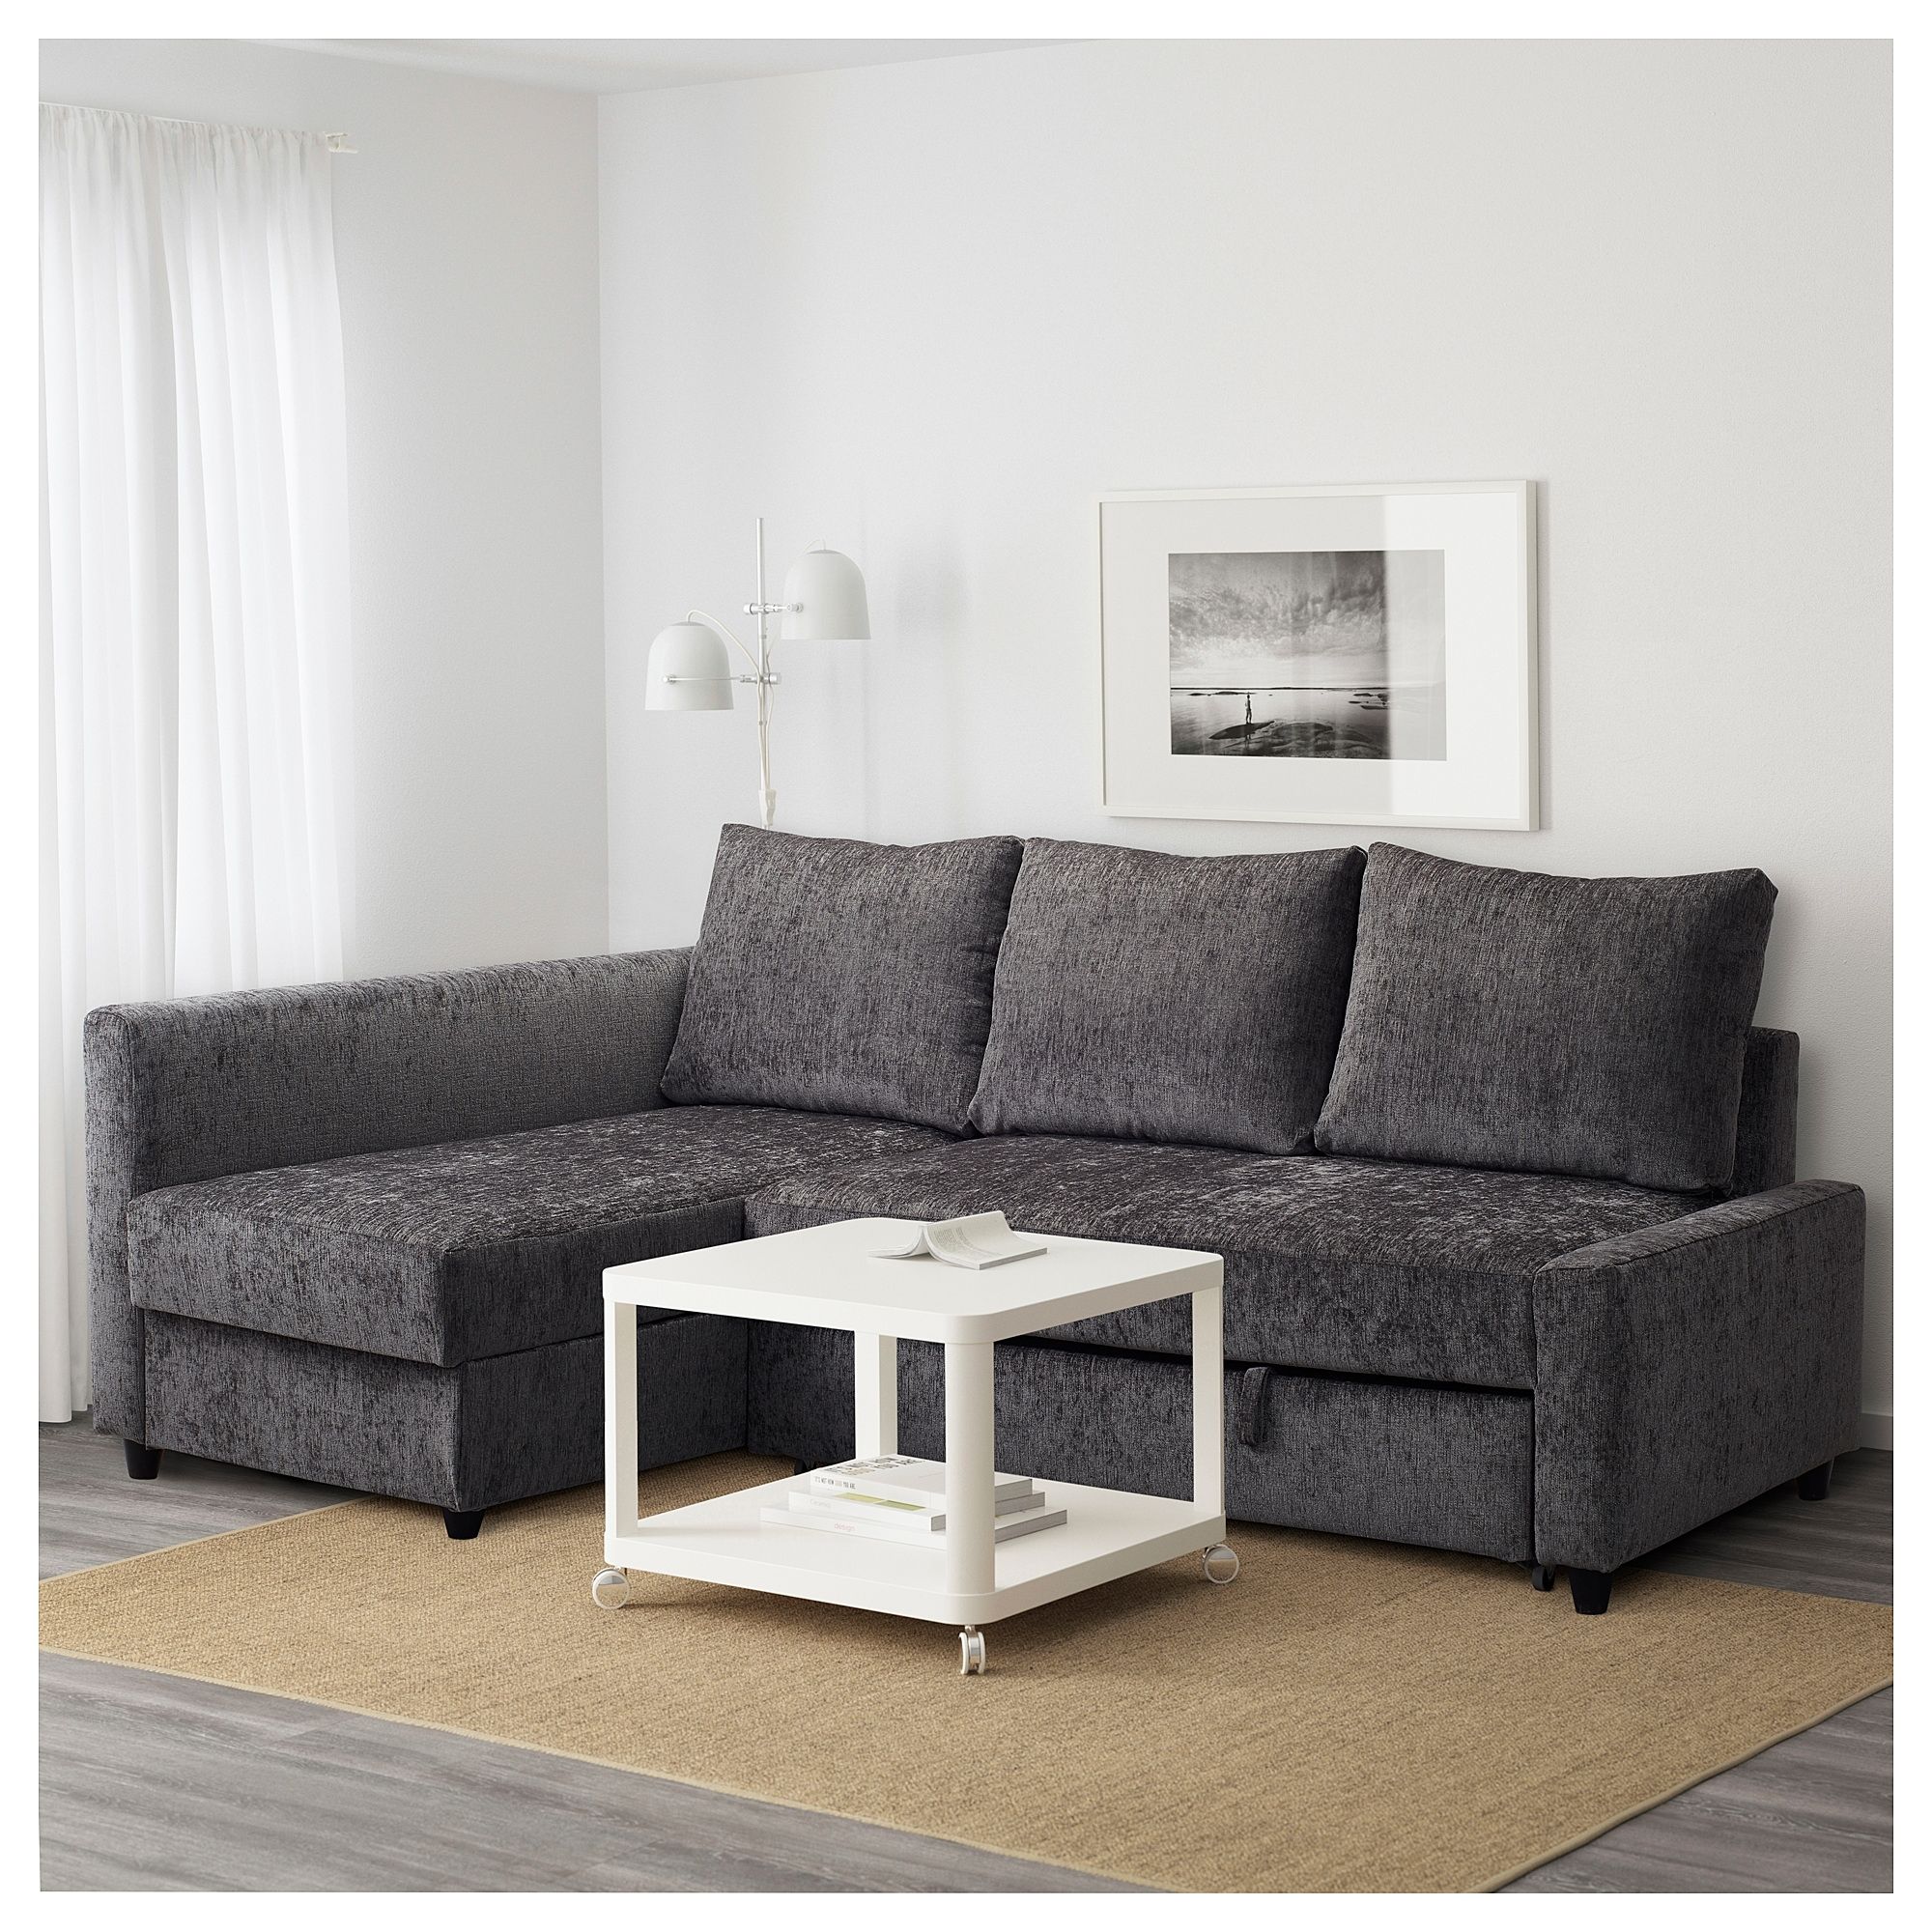 Friheten Corner Sofa Bed With Storage Dark Grey – Ikea Regarding Ikea Corner Sofas With Storage (Photo 6158 of 7825)